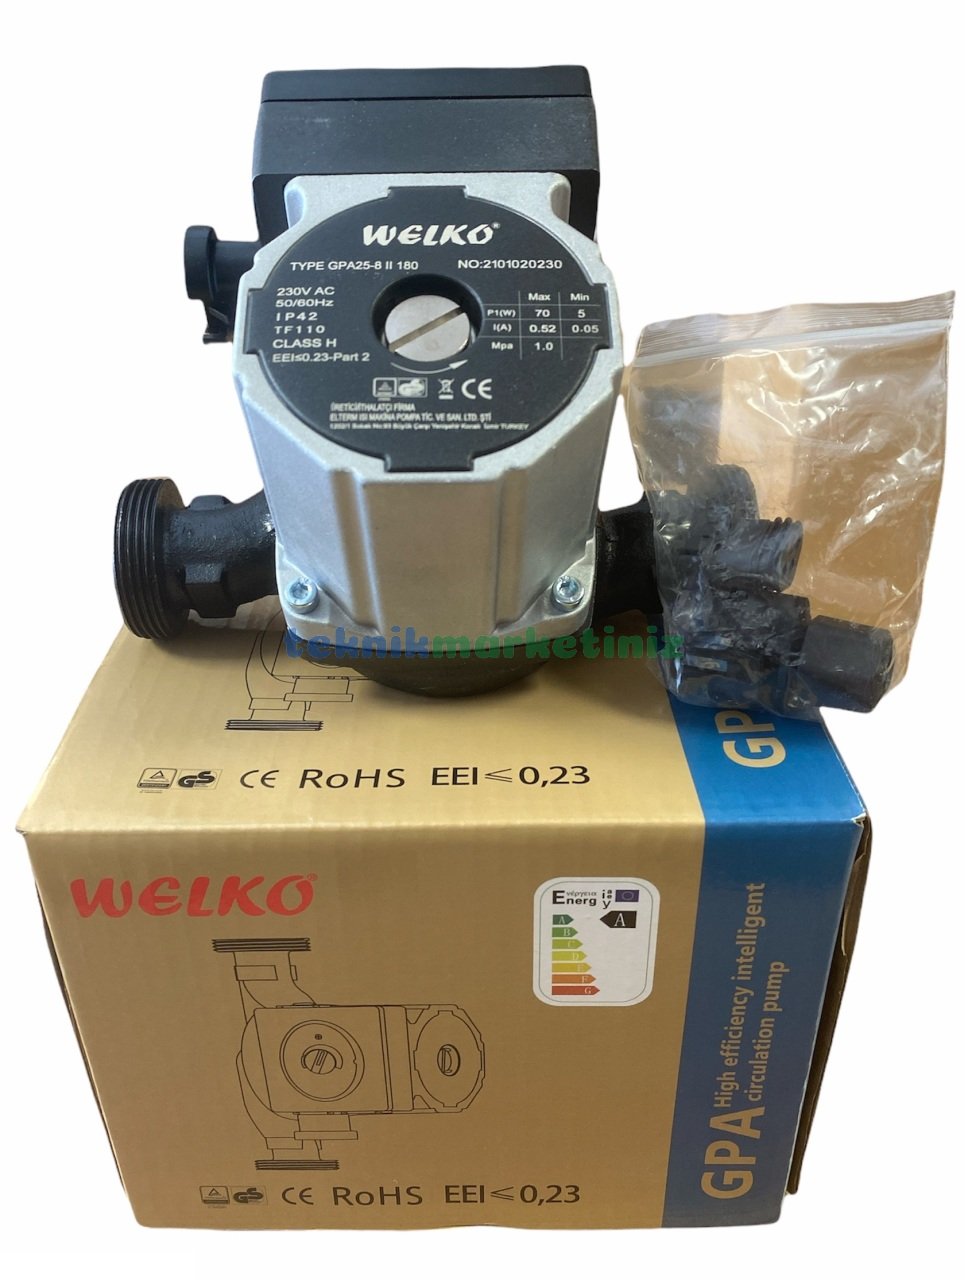 welko-gpa25-8-180-frekans-konvertorlu-sirkulasyon-devirdaim-pompasi-112-disli-invertorlu-sirkulasyon-pompasi-eski muadil ürün modeli lrs40/6-180'dir.